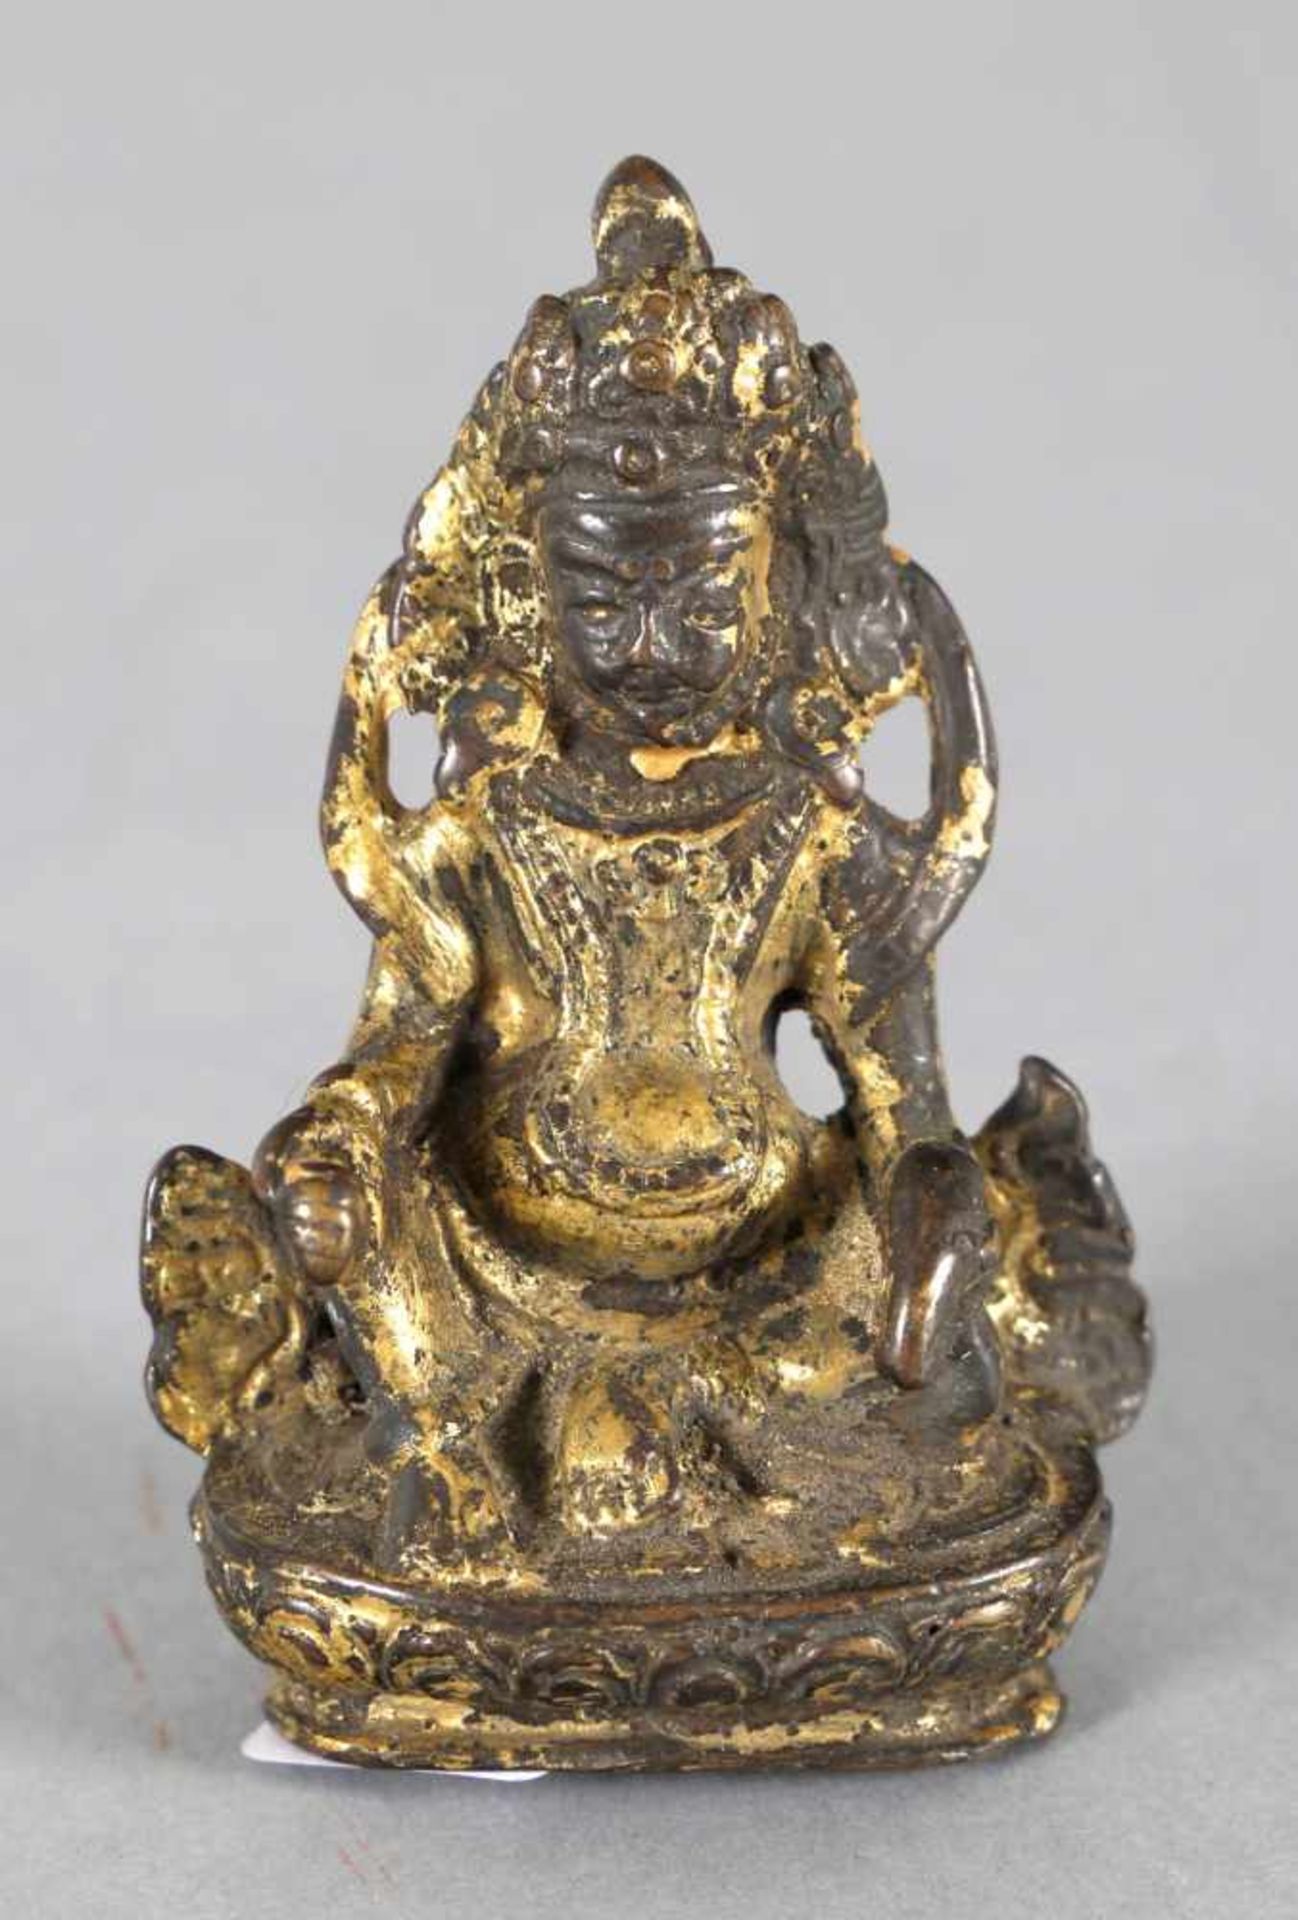 Skulptur eines thronenden Buddhas, vielleicht des Matakala, China/Tibet, wohl 18. Jh.Bronze